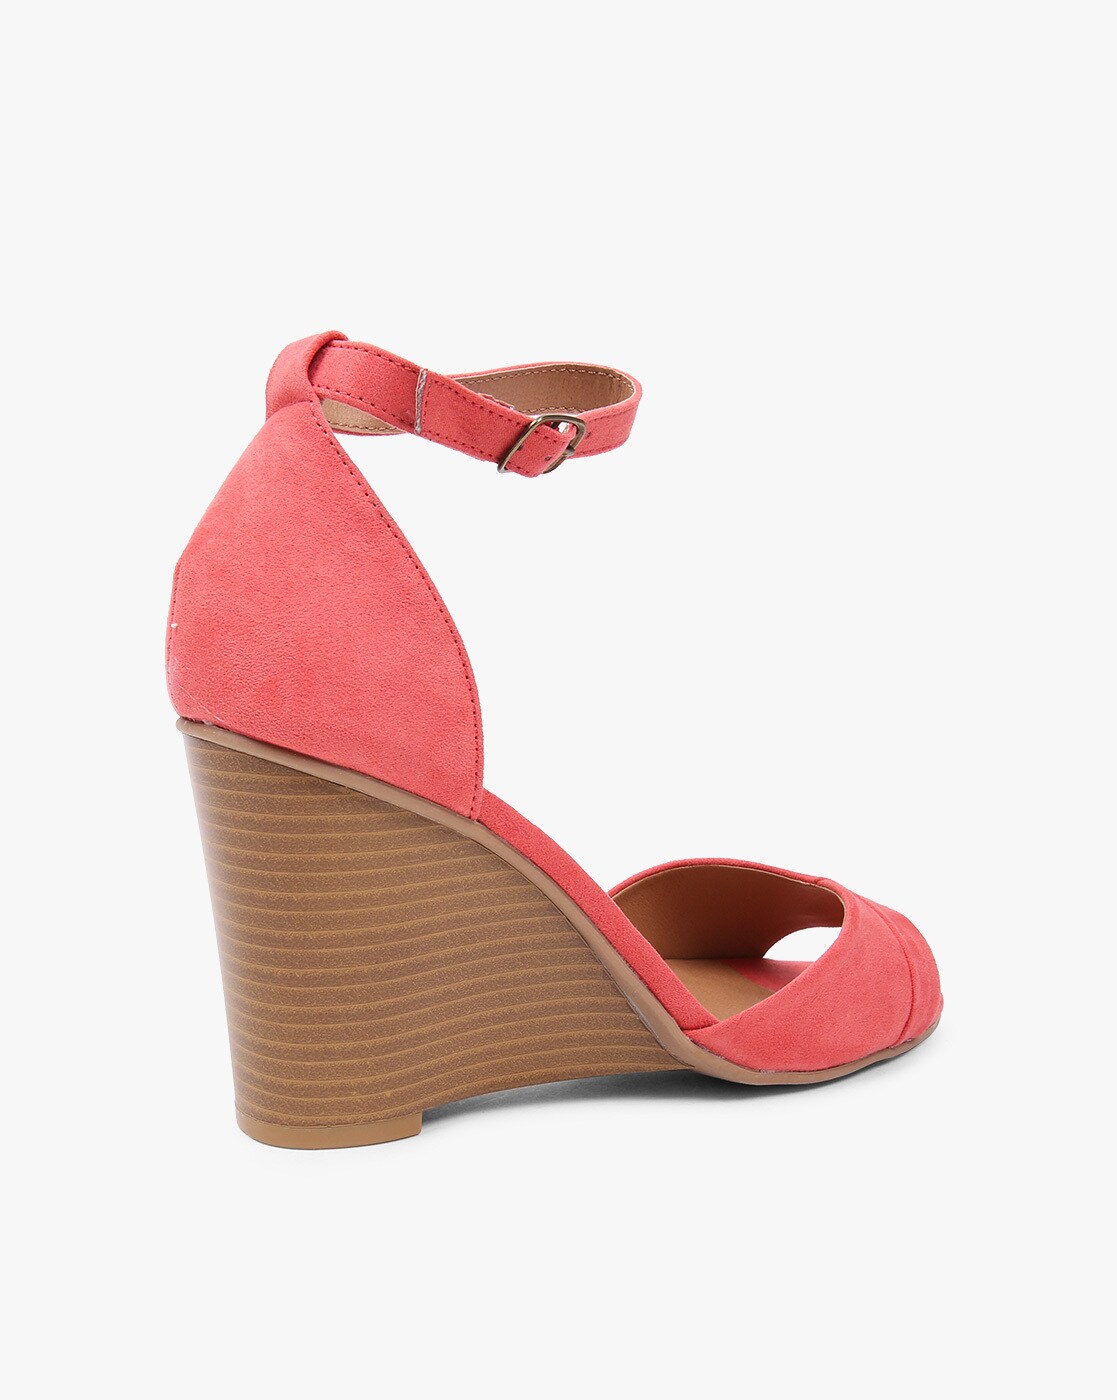 coral peep toe heels